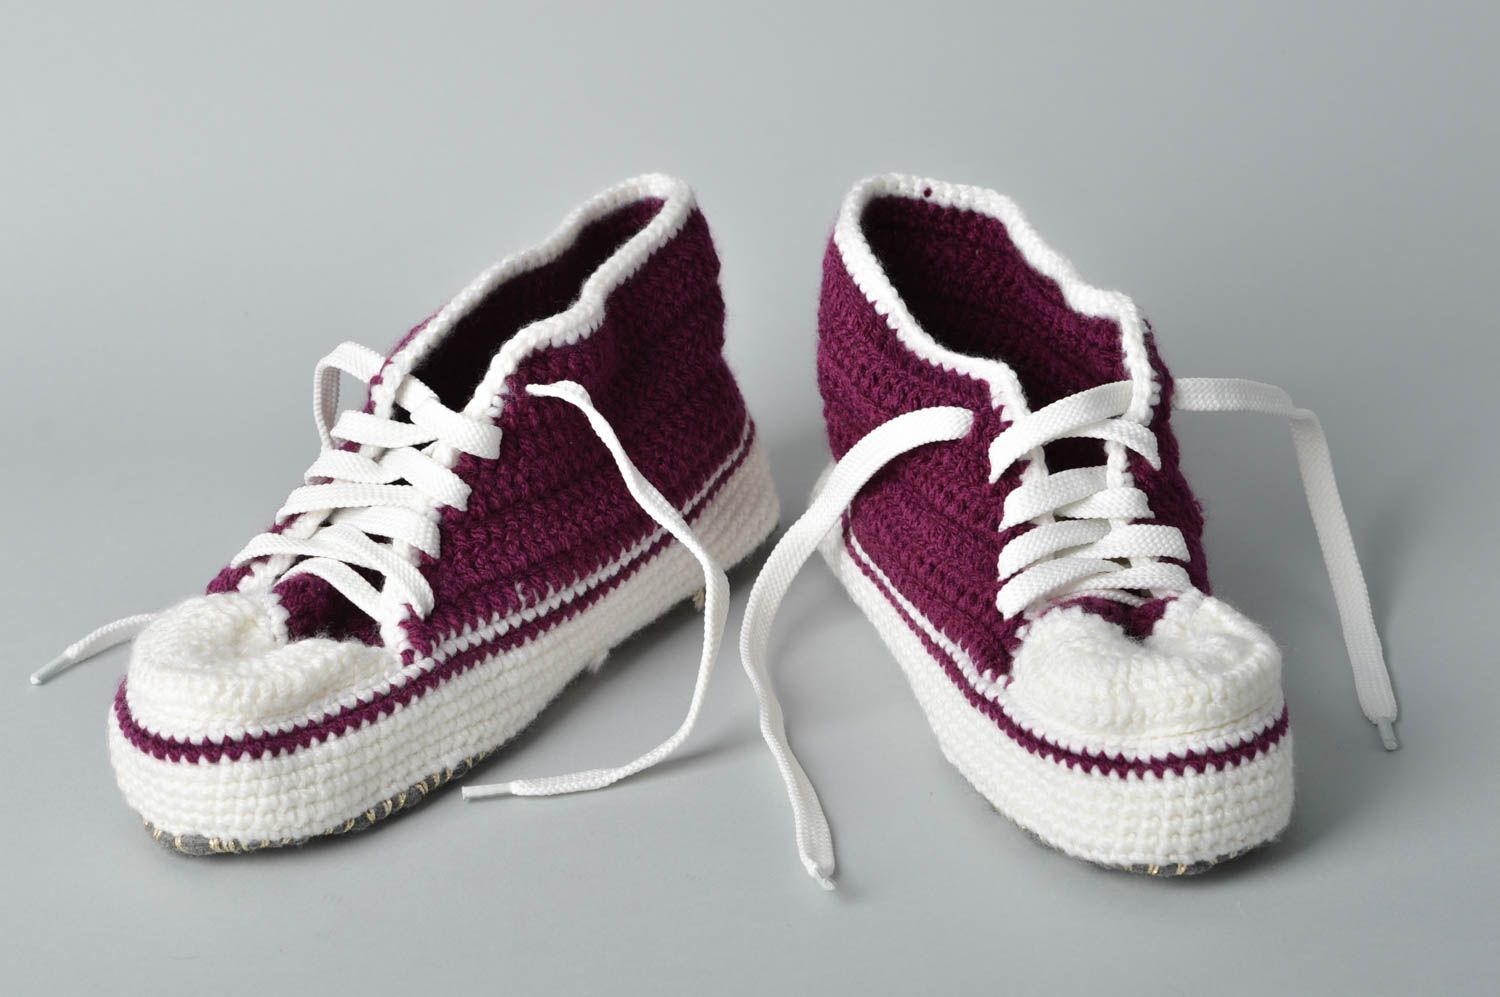 Crochet Sneaker Slippers | tunersread.com